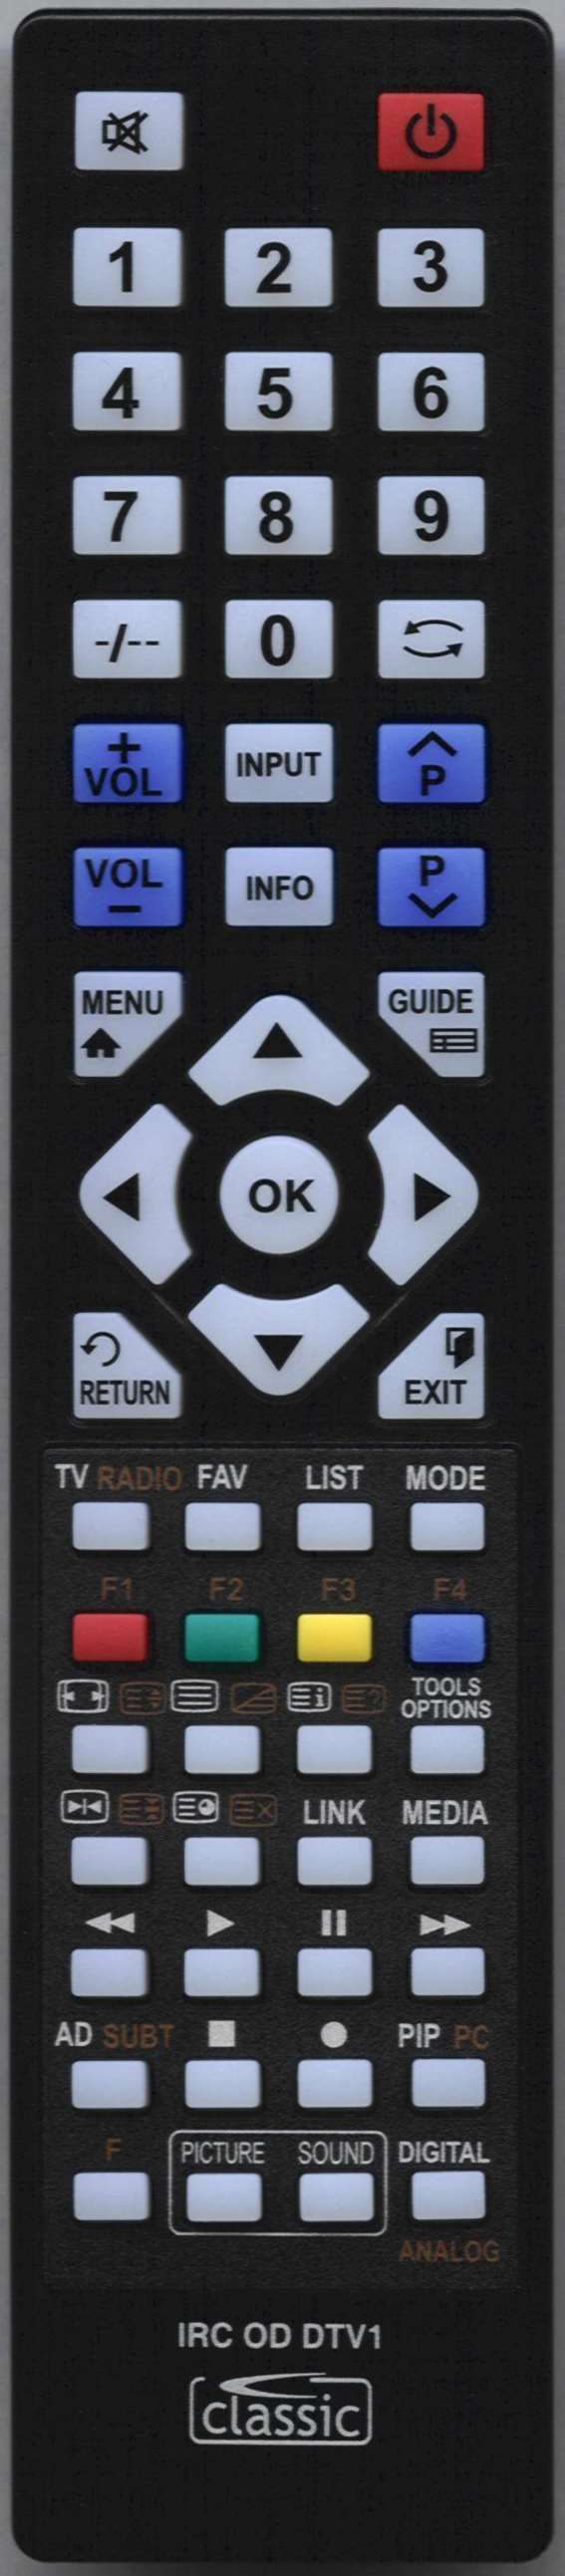 LUXOR 10043138 Remote Control Alternative